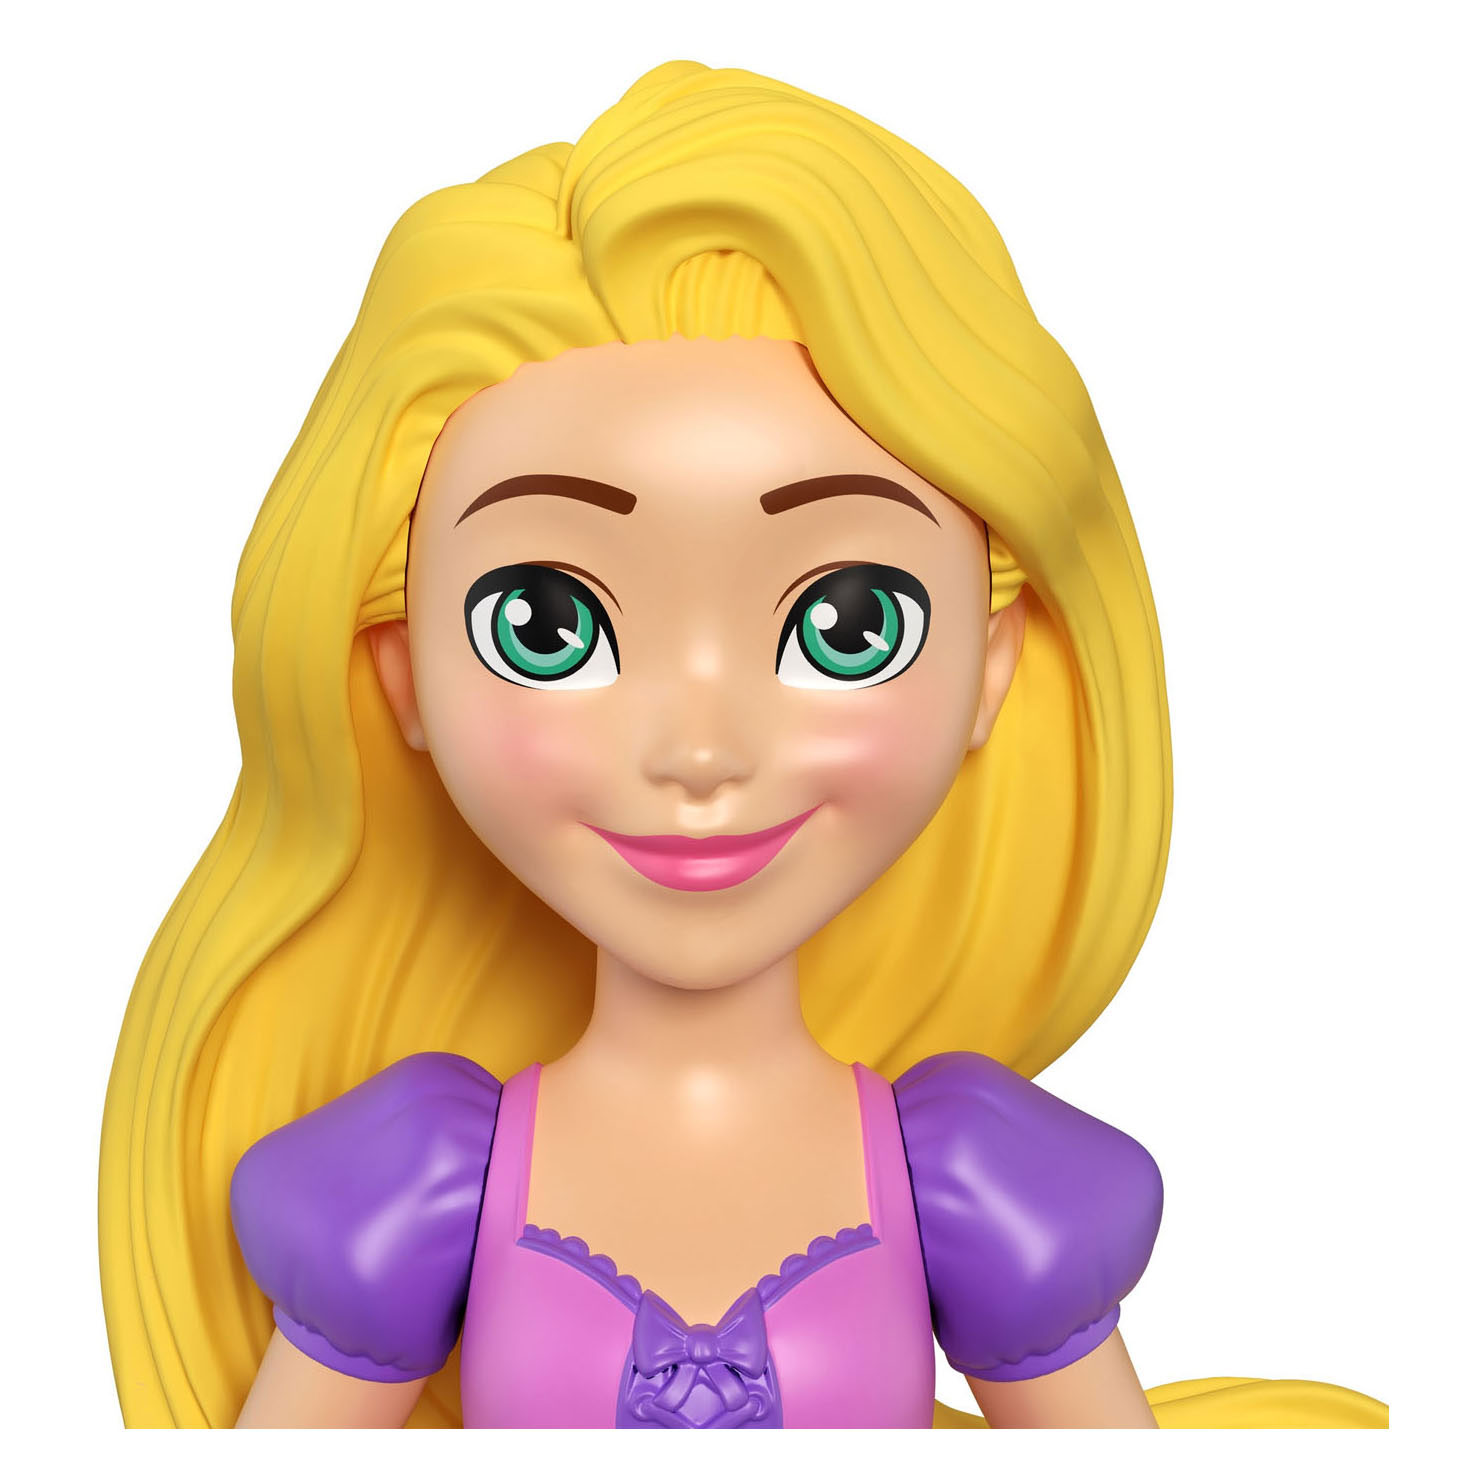 Disney Prinses Rapunzel & Maximus